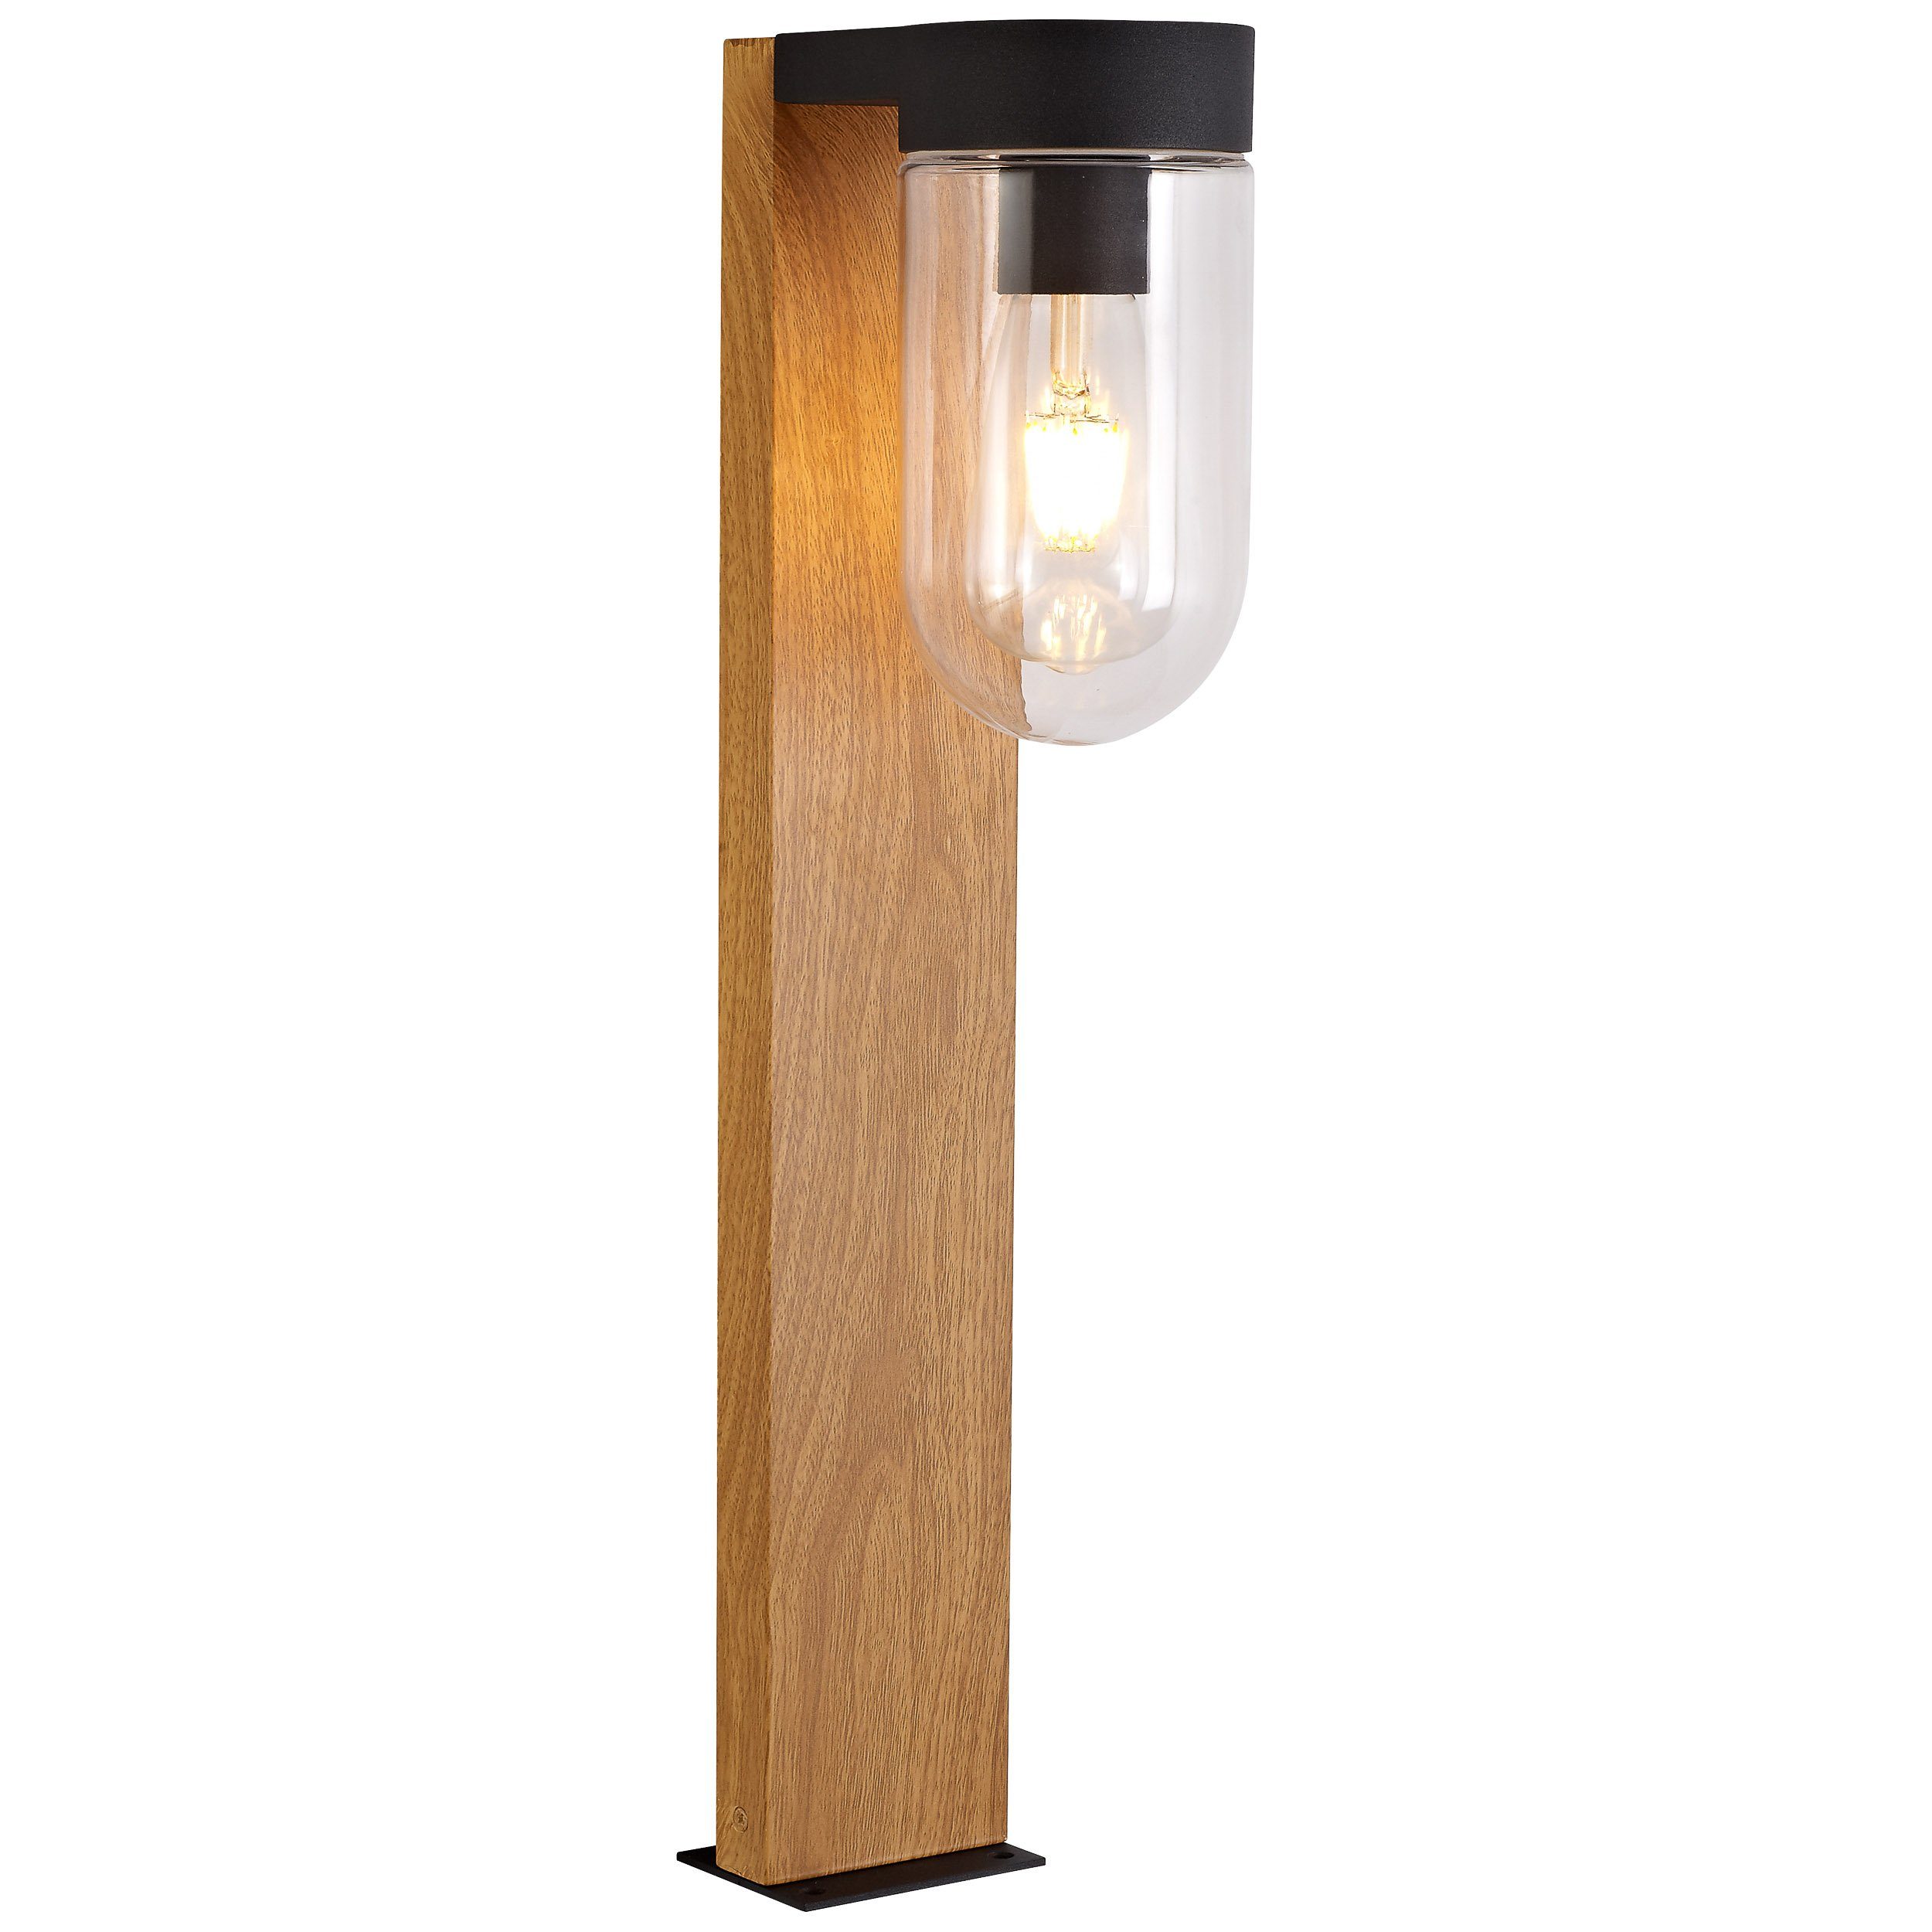 Außen-Stehlampe 1x Cabar dunkel/schwarz Cabar, Außensockelleuchte holz Lampe Brilliant E27 A60, 55cm